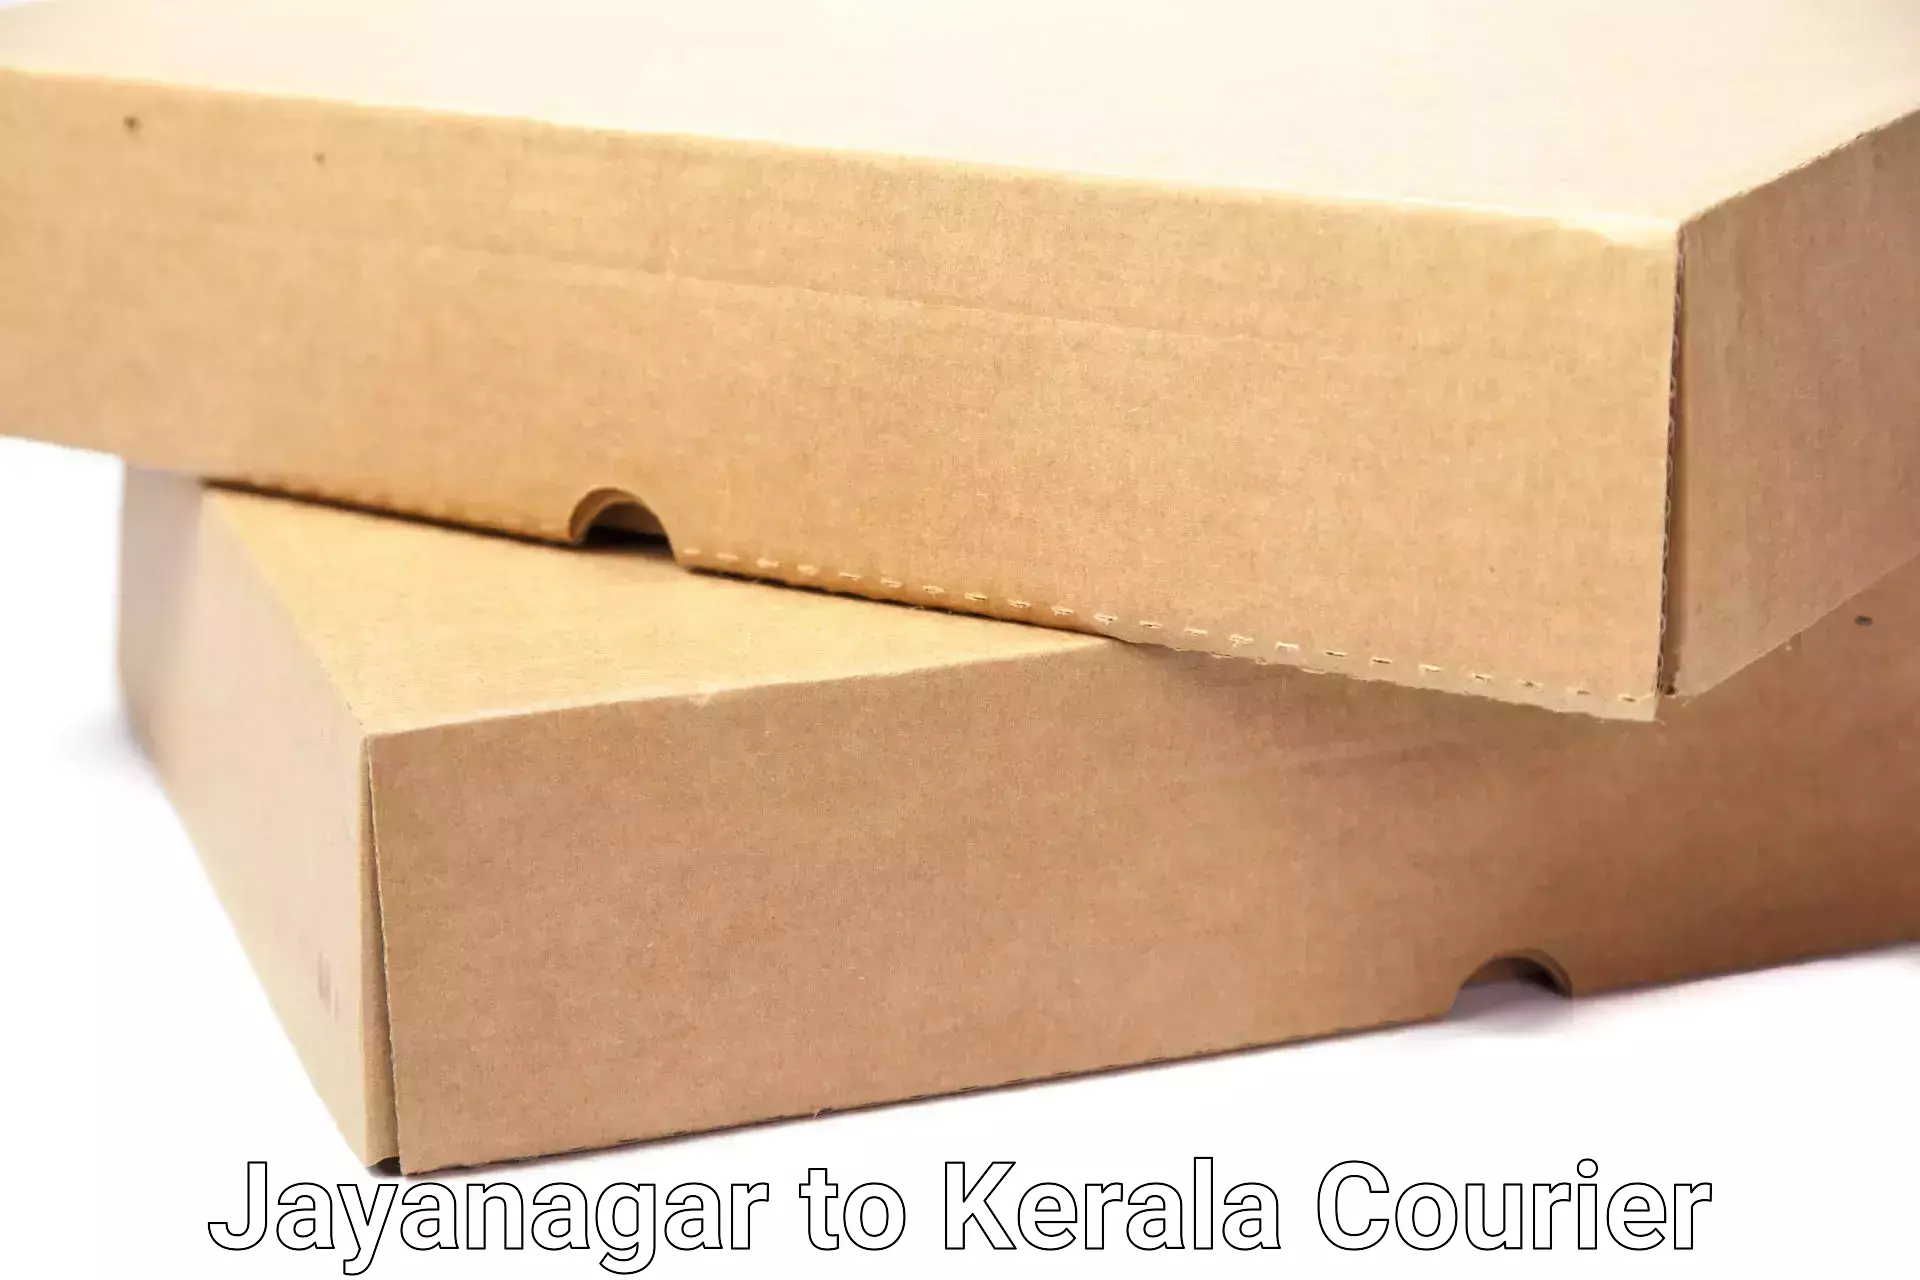 Home relocation solutions Jayanagar to Kottarakkara